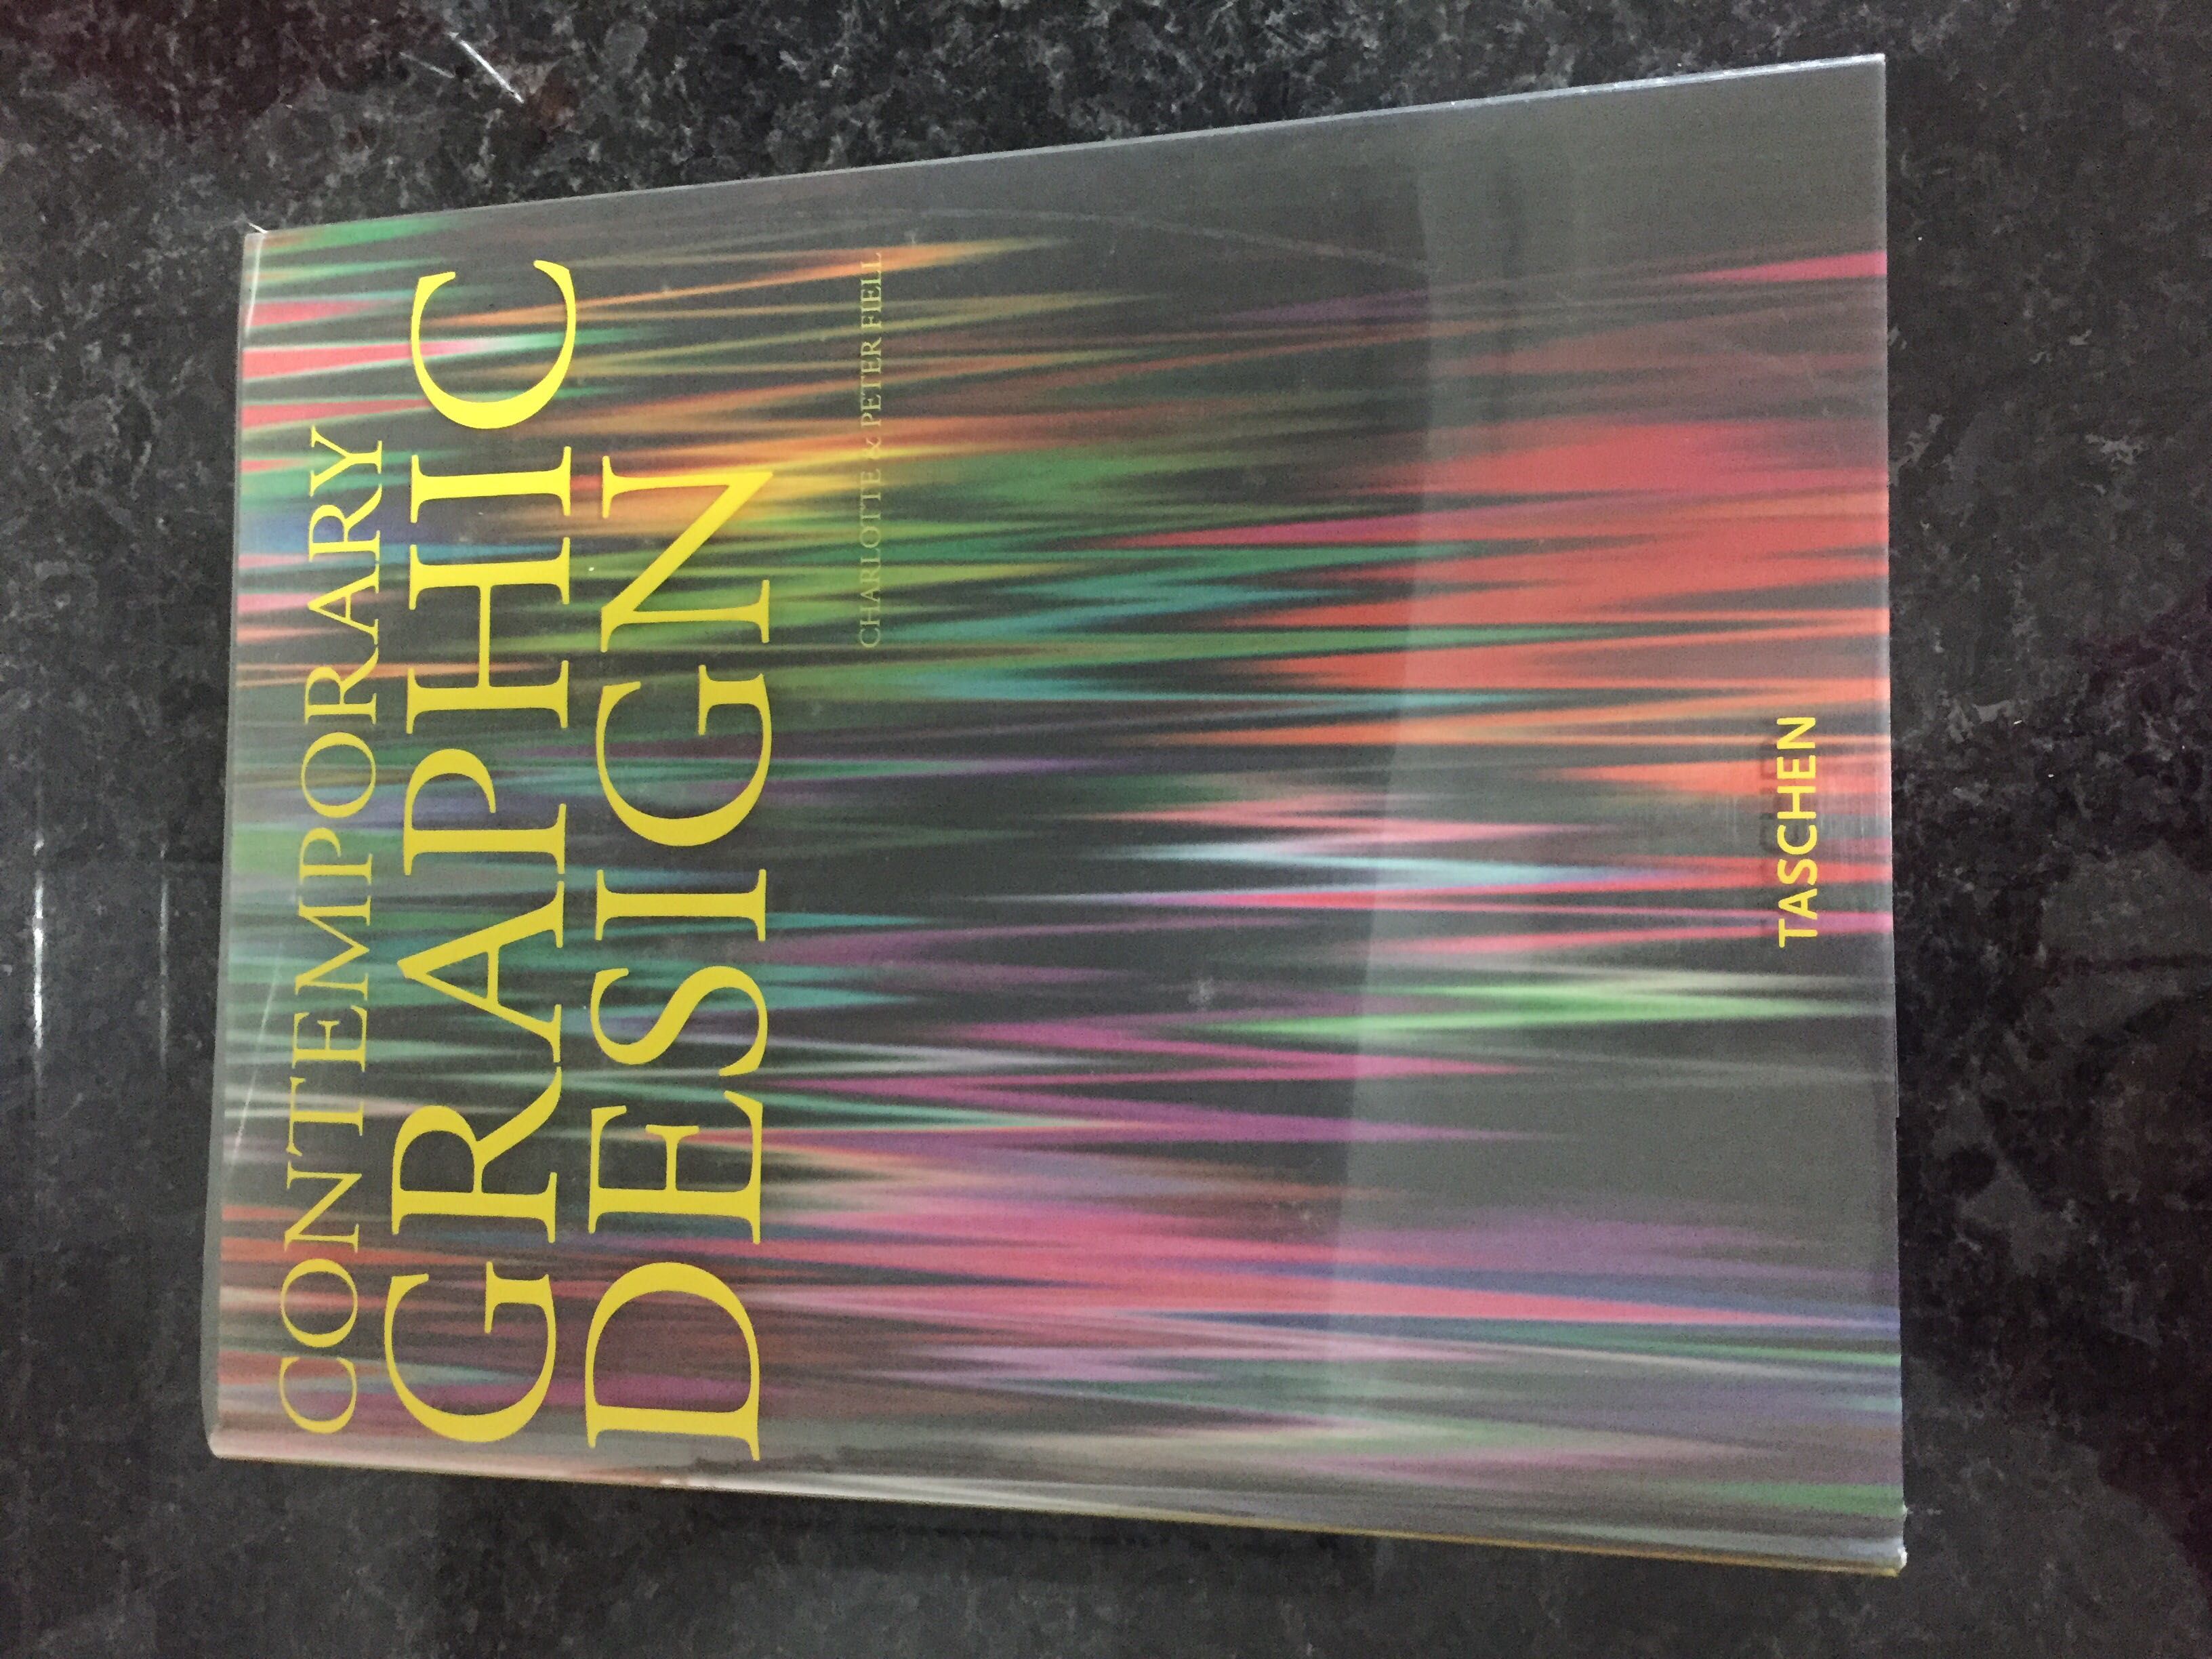 Livro de design - contemporary graphic design 22€